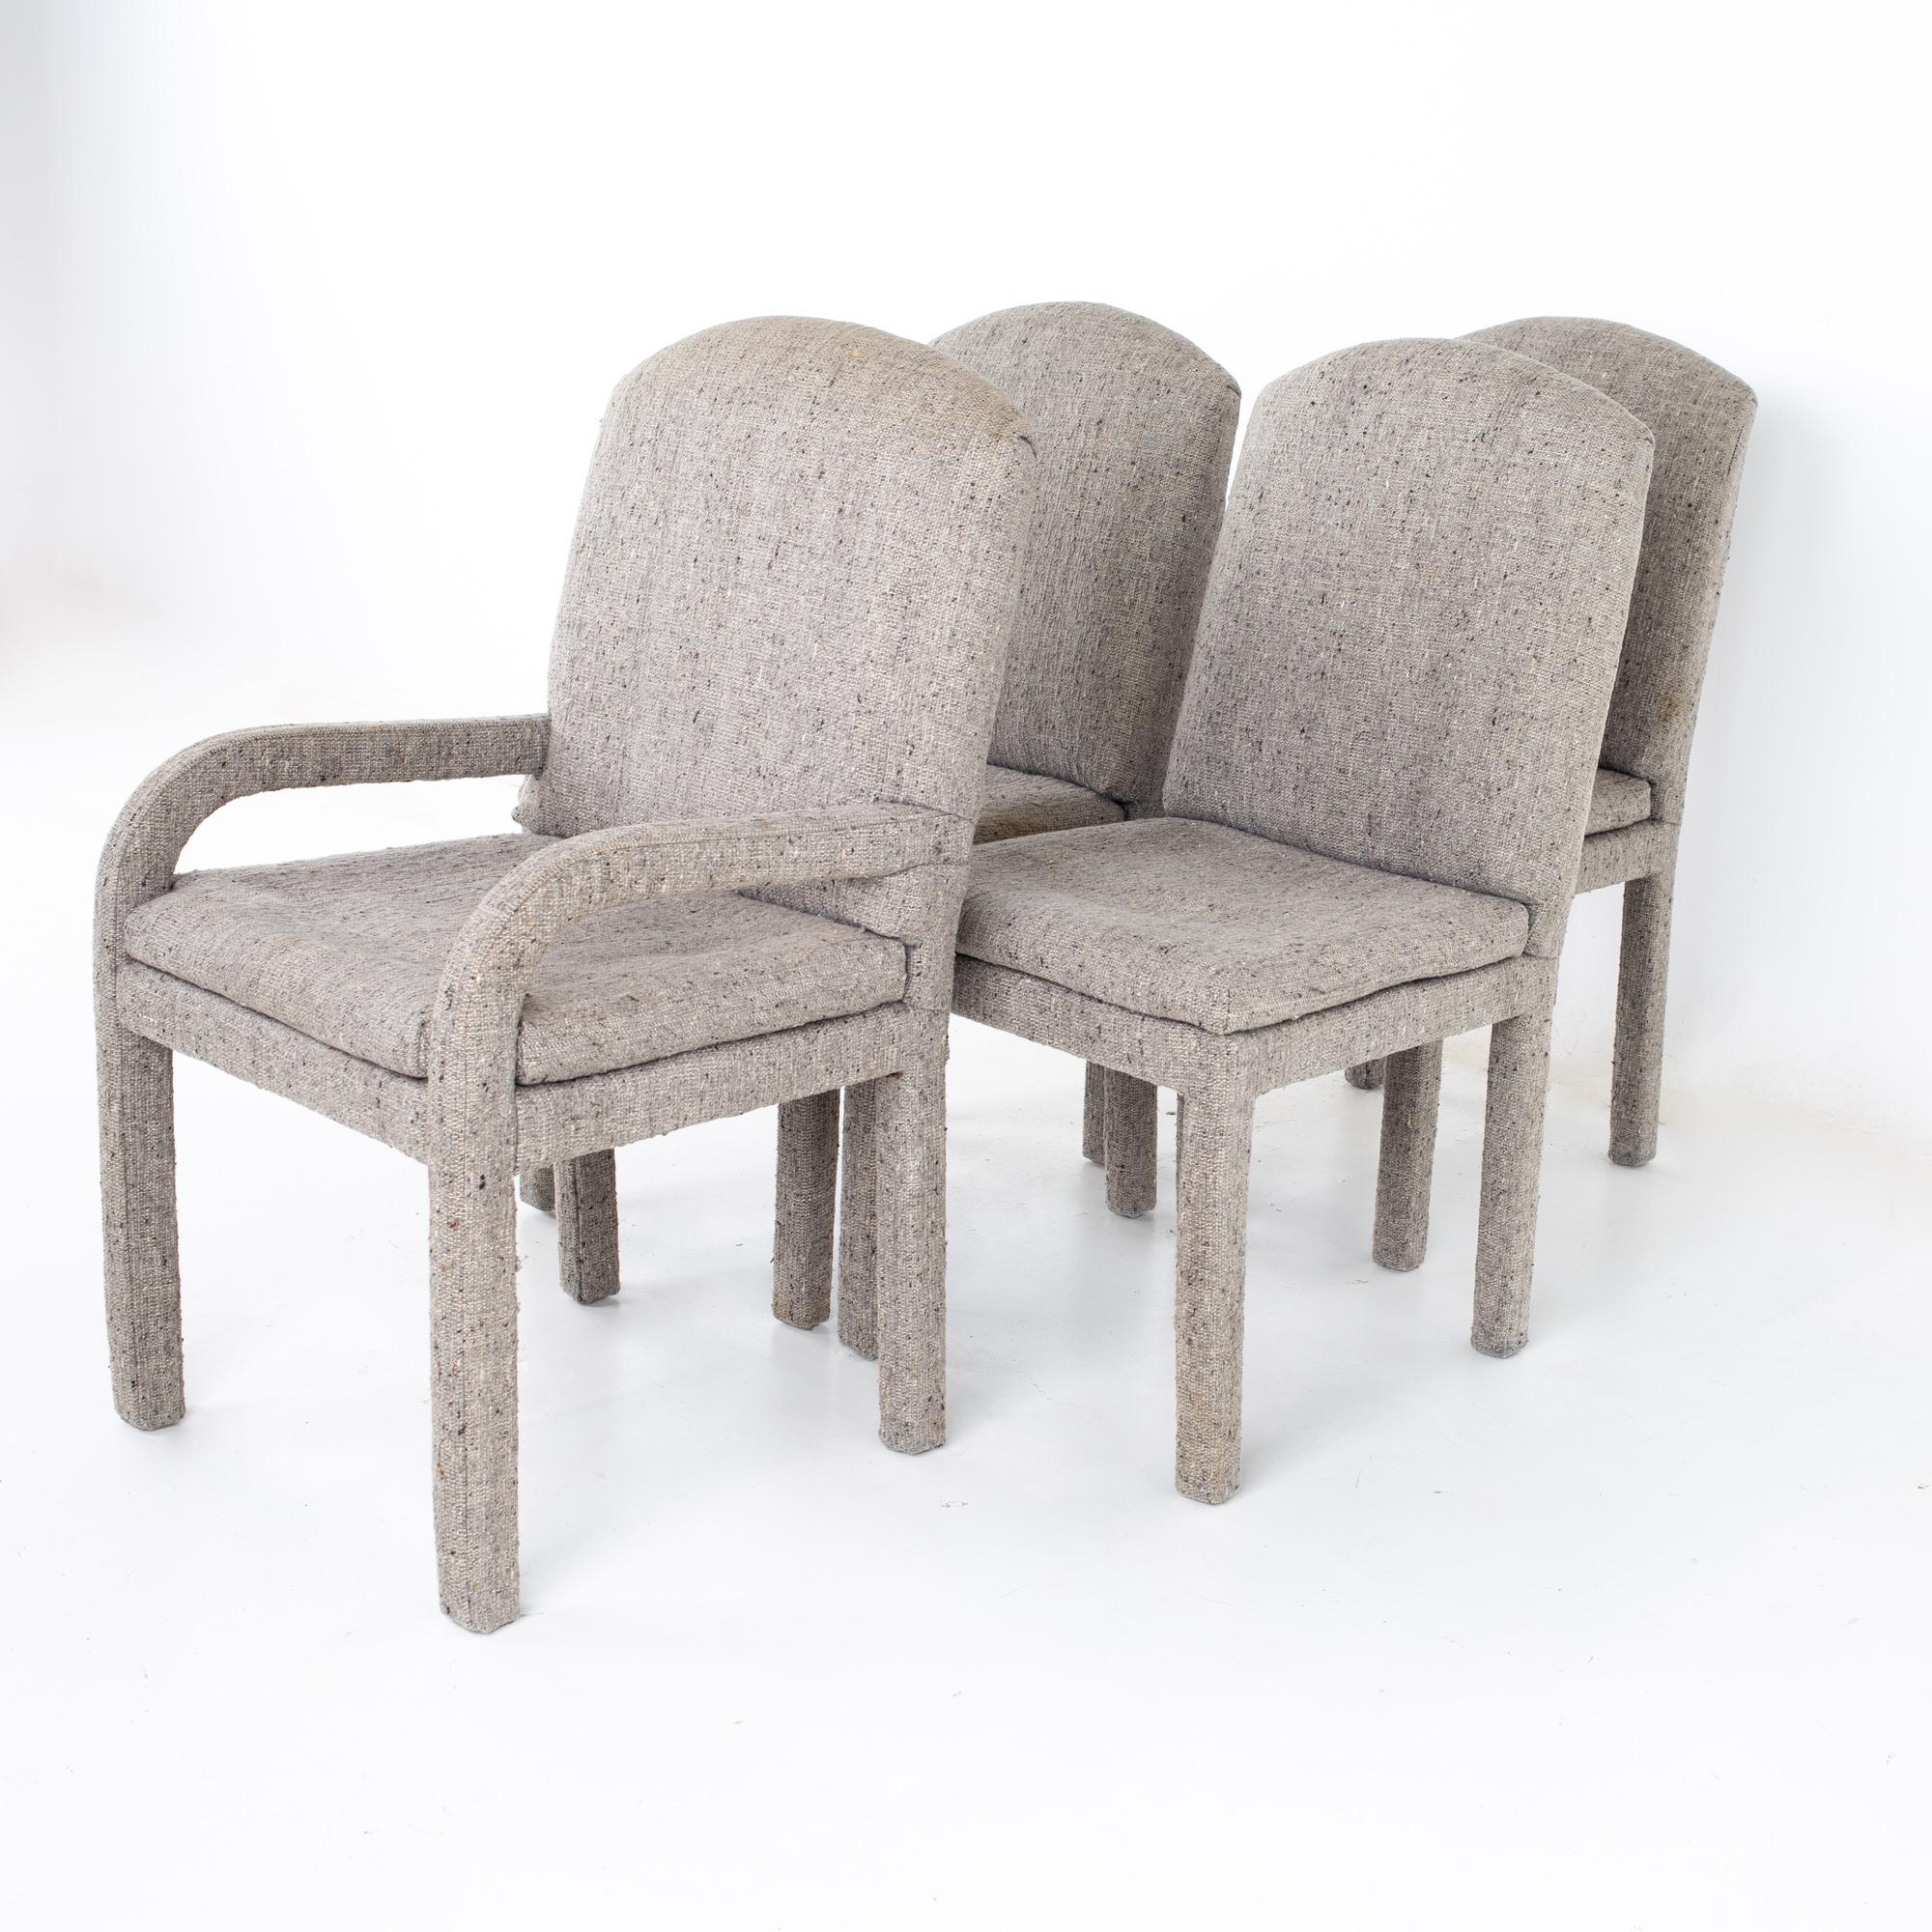 Chaises Parsons grises de style Milo Baughman, datant du milieu du siècle dernier - Lot de 4
Chaque chaise mesure : 22.largeur 25 x profondeur 23,5 x hauteur 40, avec une hauteur d'assise de 20 pouces

Tous les meubles peuvent être obtenus dans